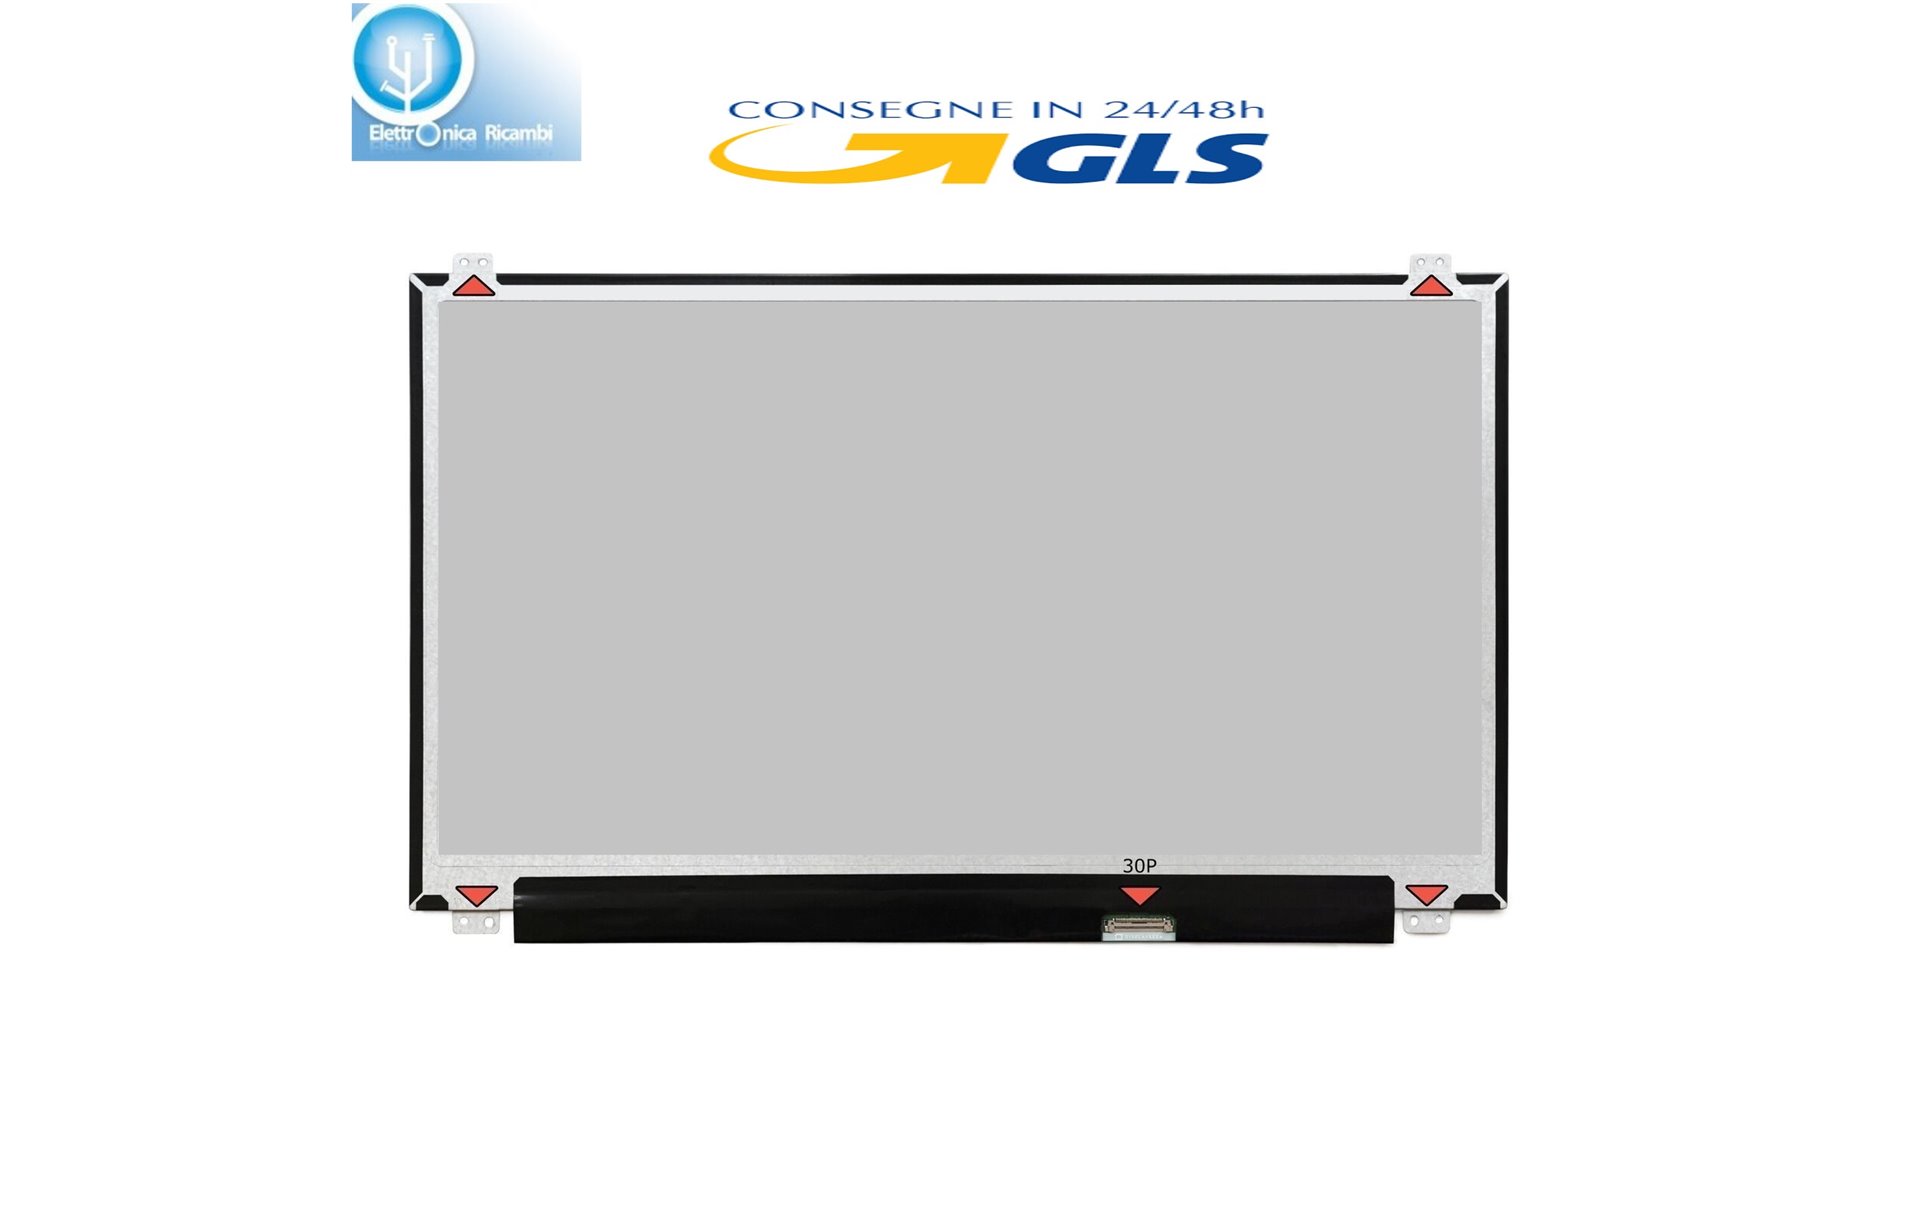 DISPLAY LCD MSI GT62VR 6RD-202CA 15.6 1920x1080 LED 30 pin